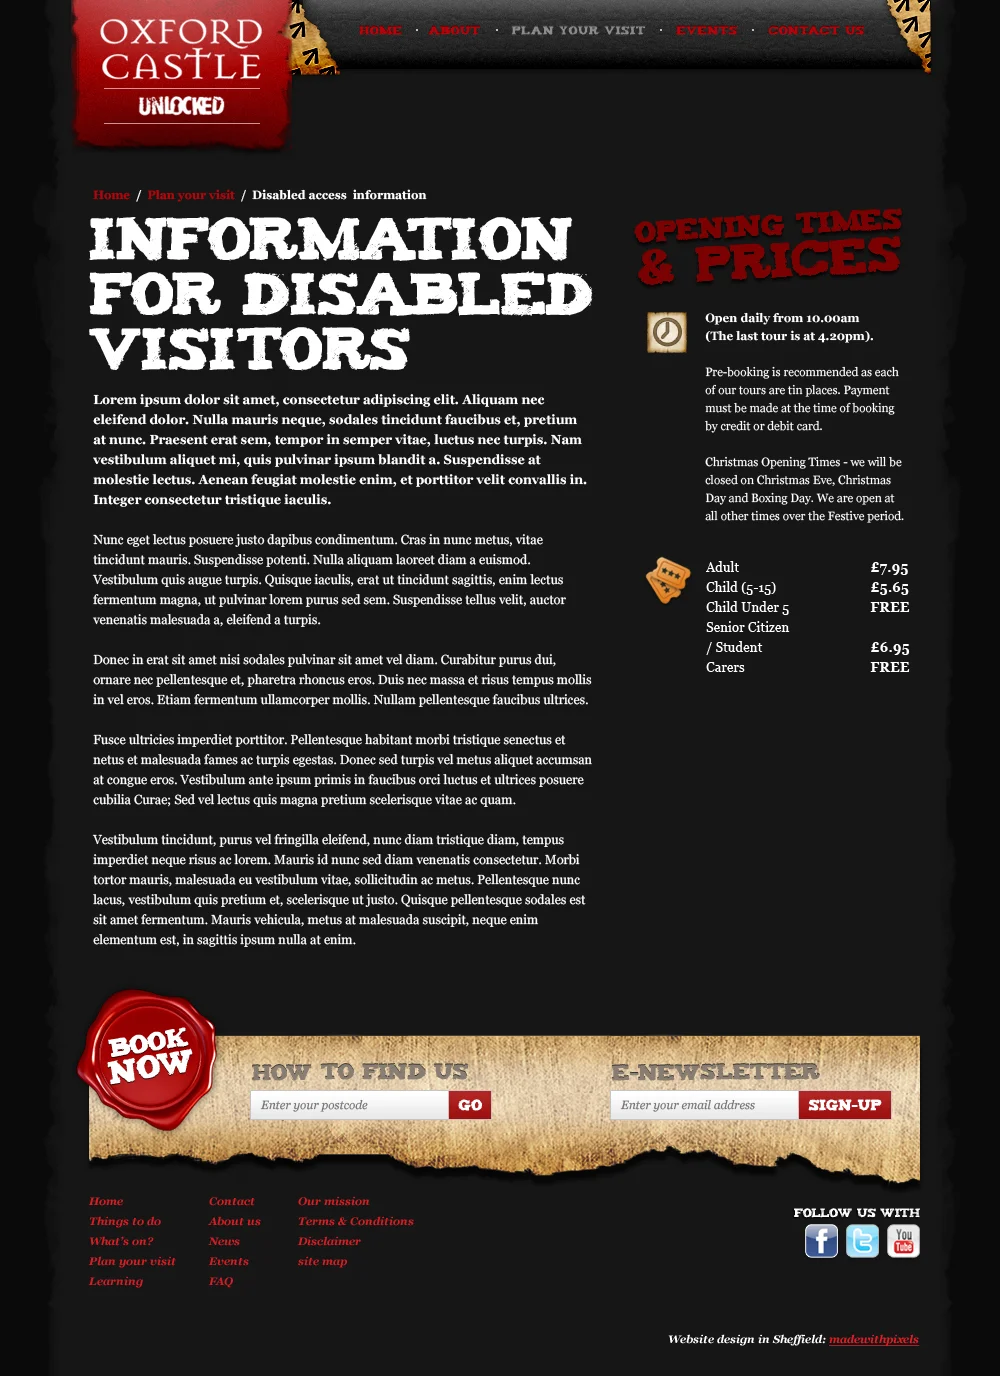 The Oxford Castle Tour website